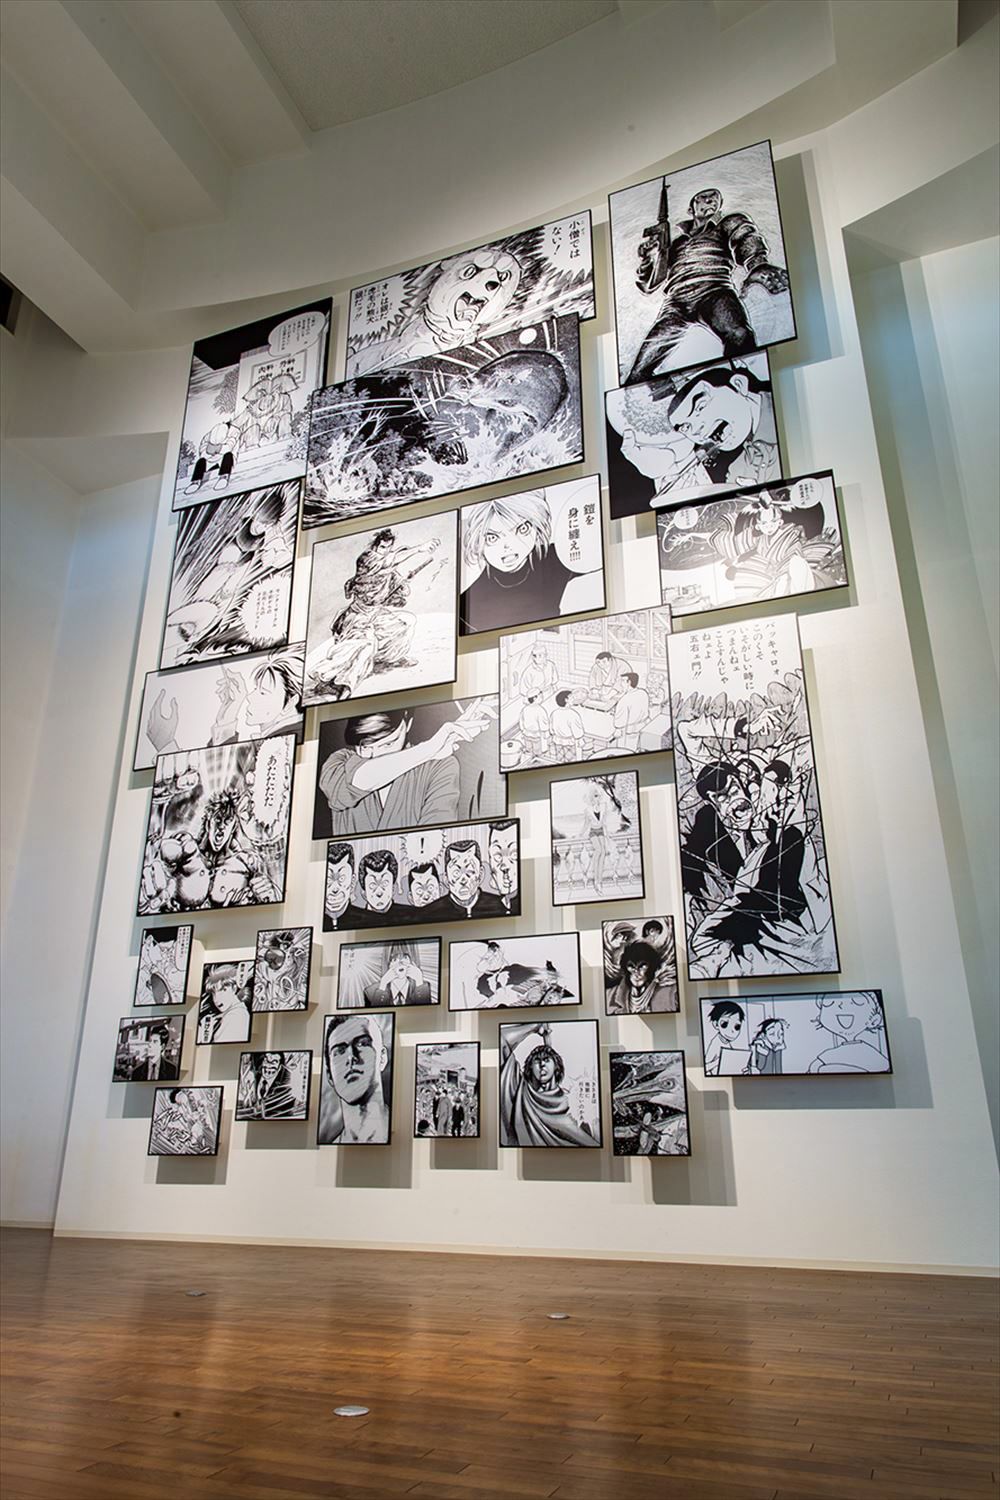 Le « mur de mangas » : un florilège de panneaux de mangas tous plus incontournables les uns que les autres (avec l'aimable autorisation du musée du manga de Yokote Masuda)